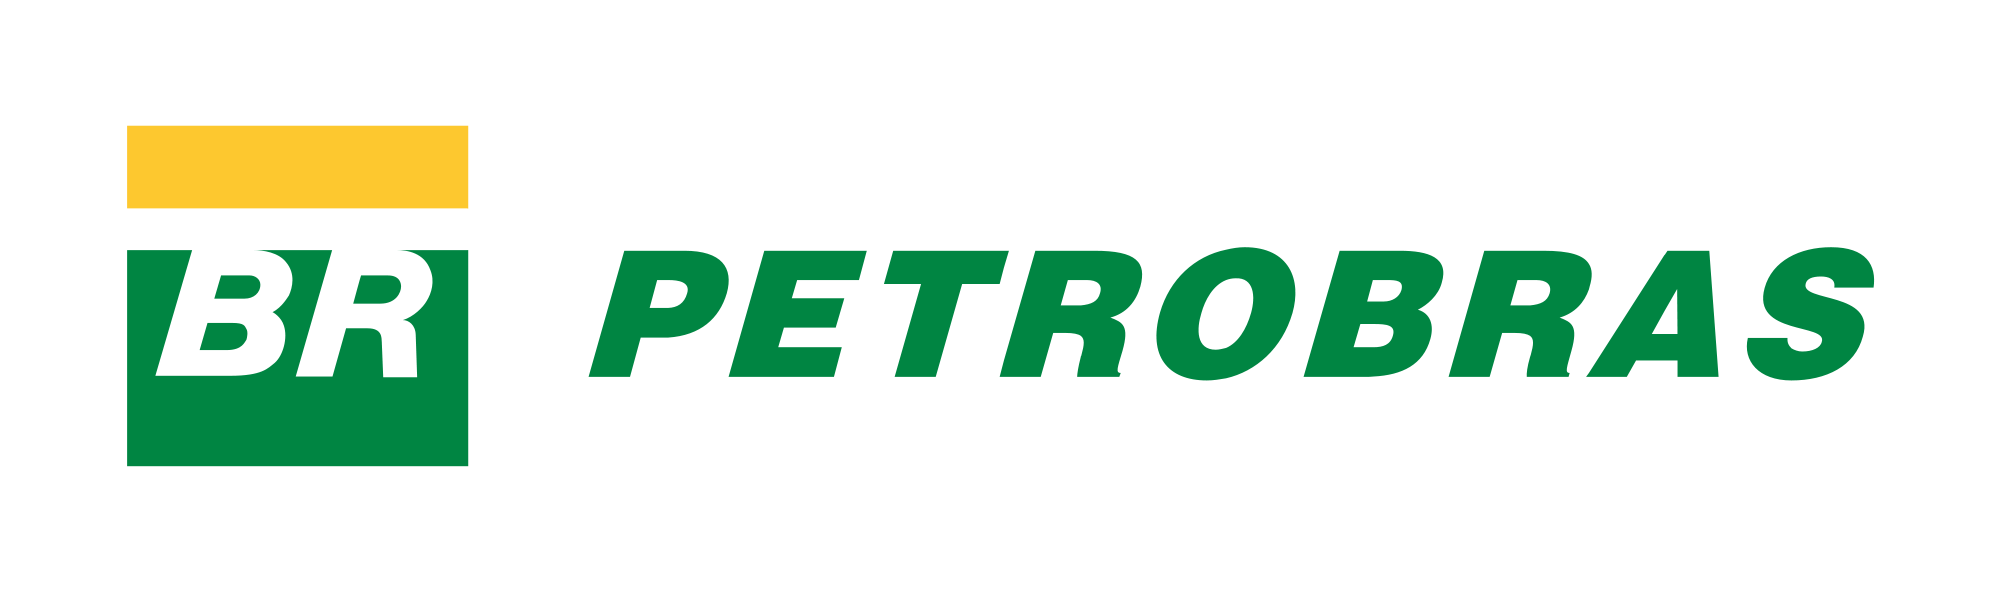 File:Petrobras logo 5.svg